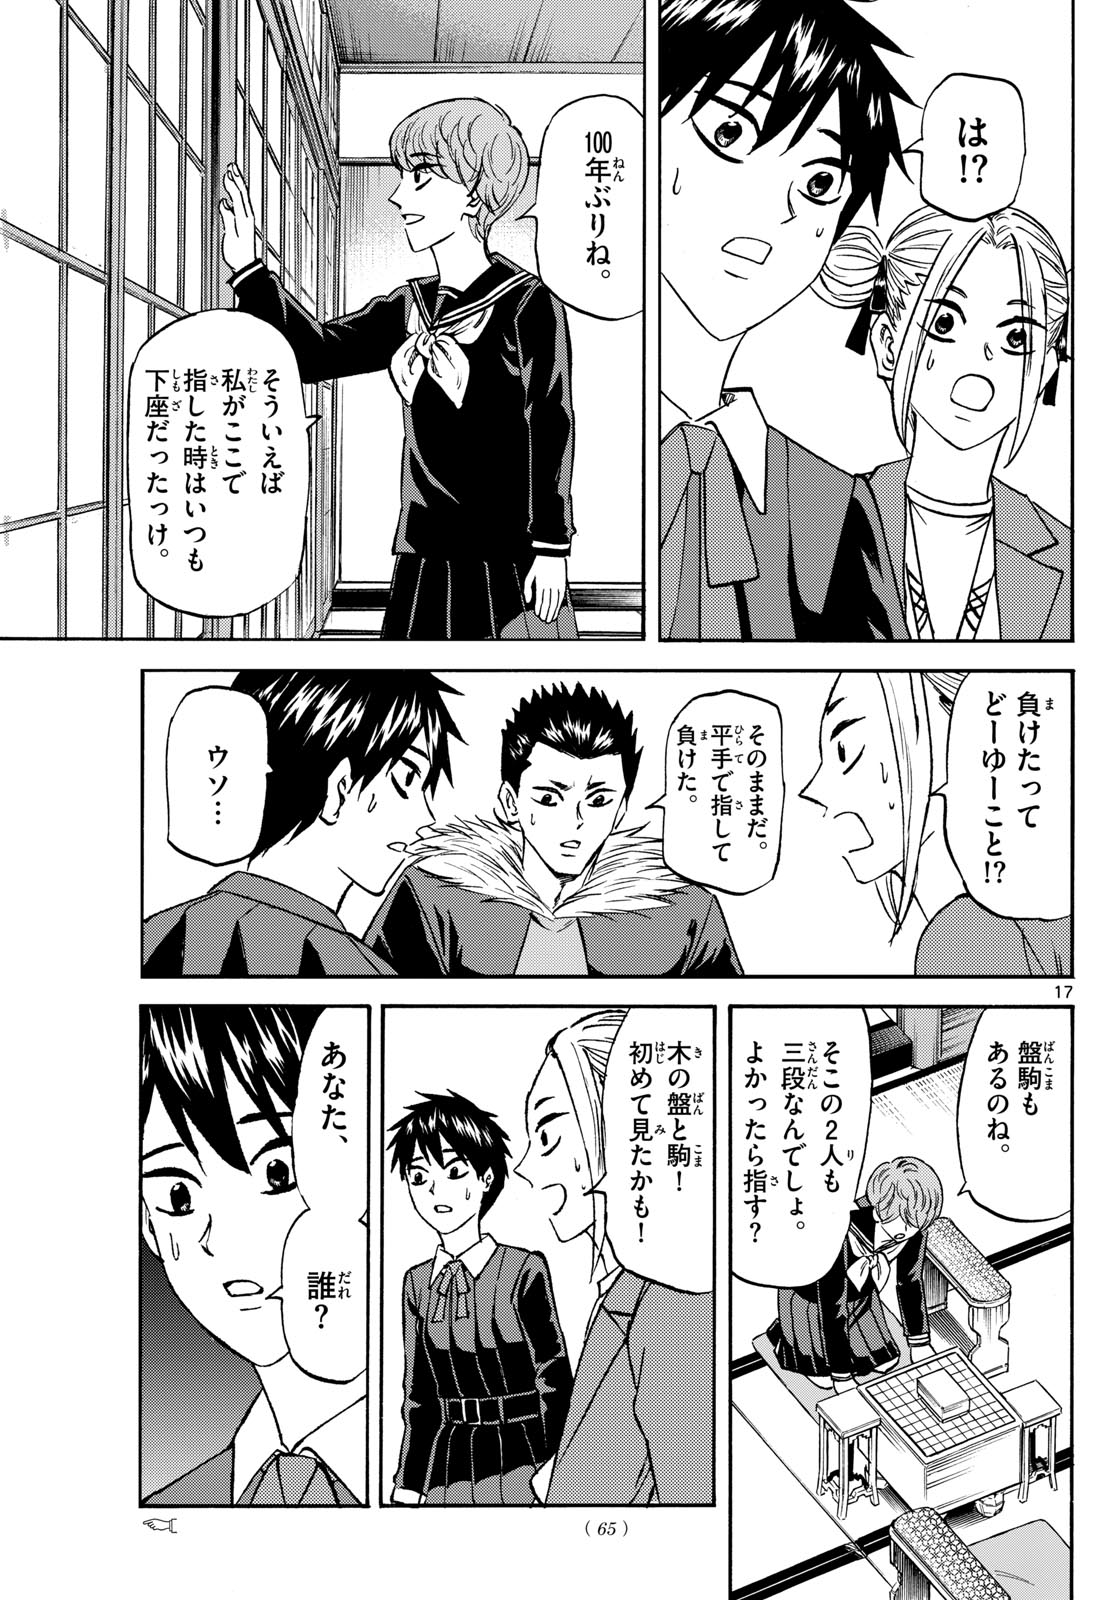 Tatsu to Ichigo - Chapter 183 - Page 17